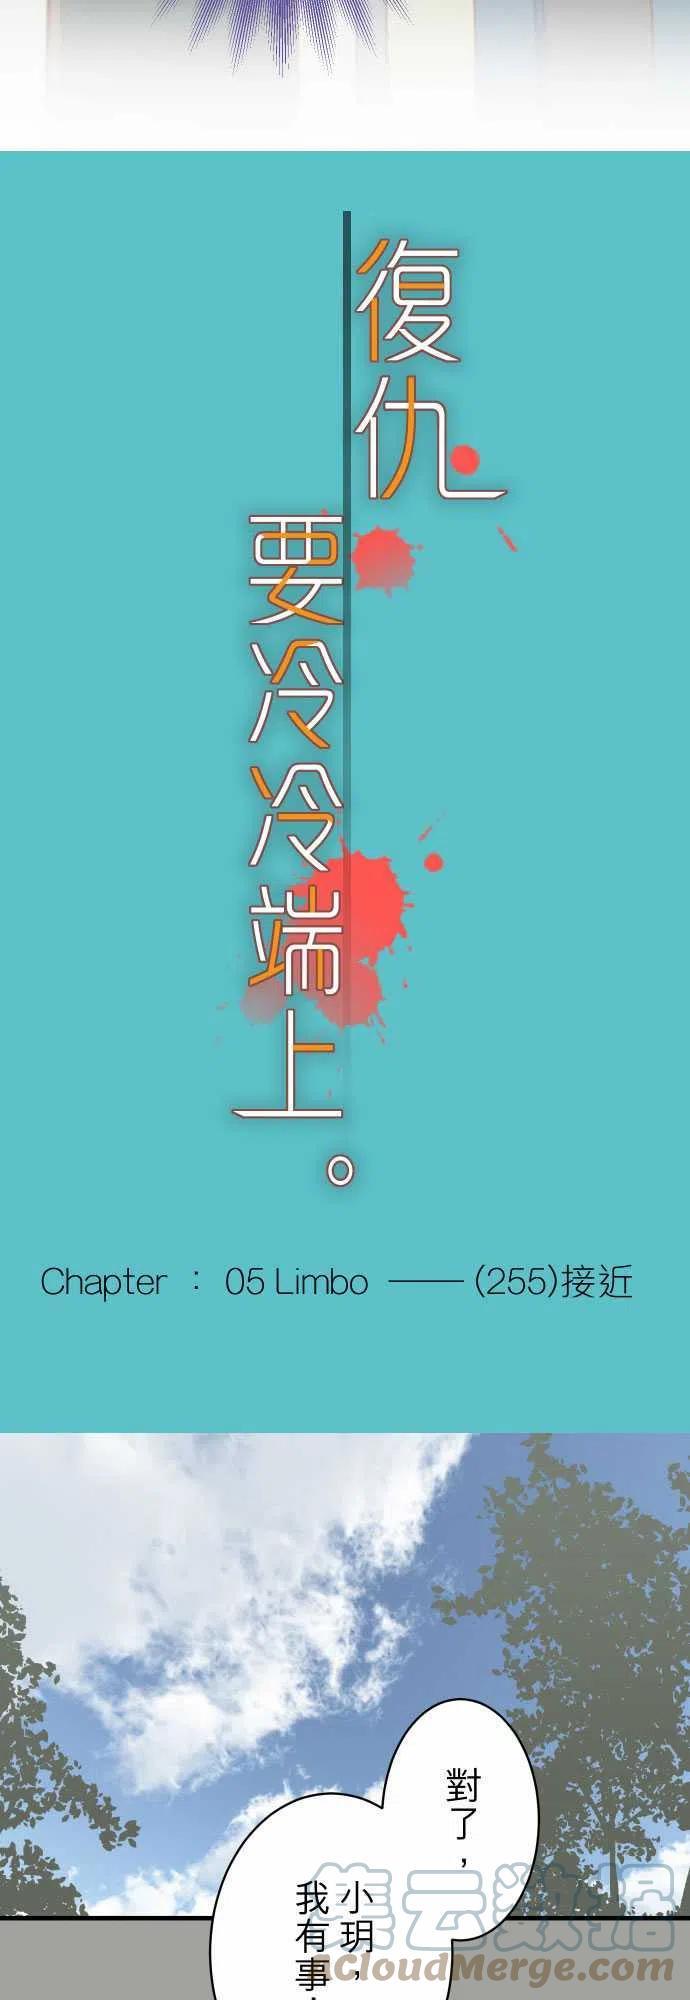 第五章 Limbo 255 接近2